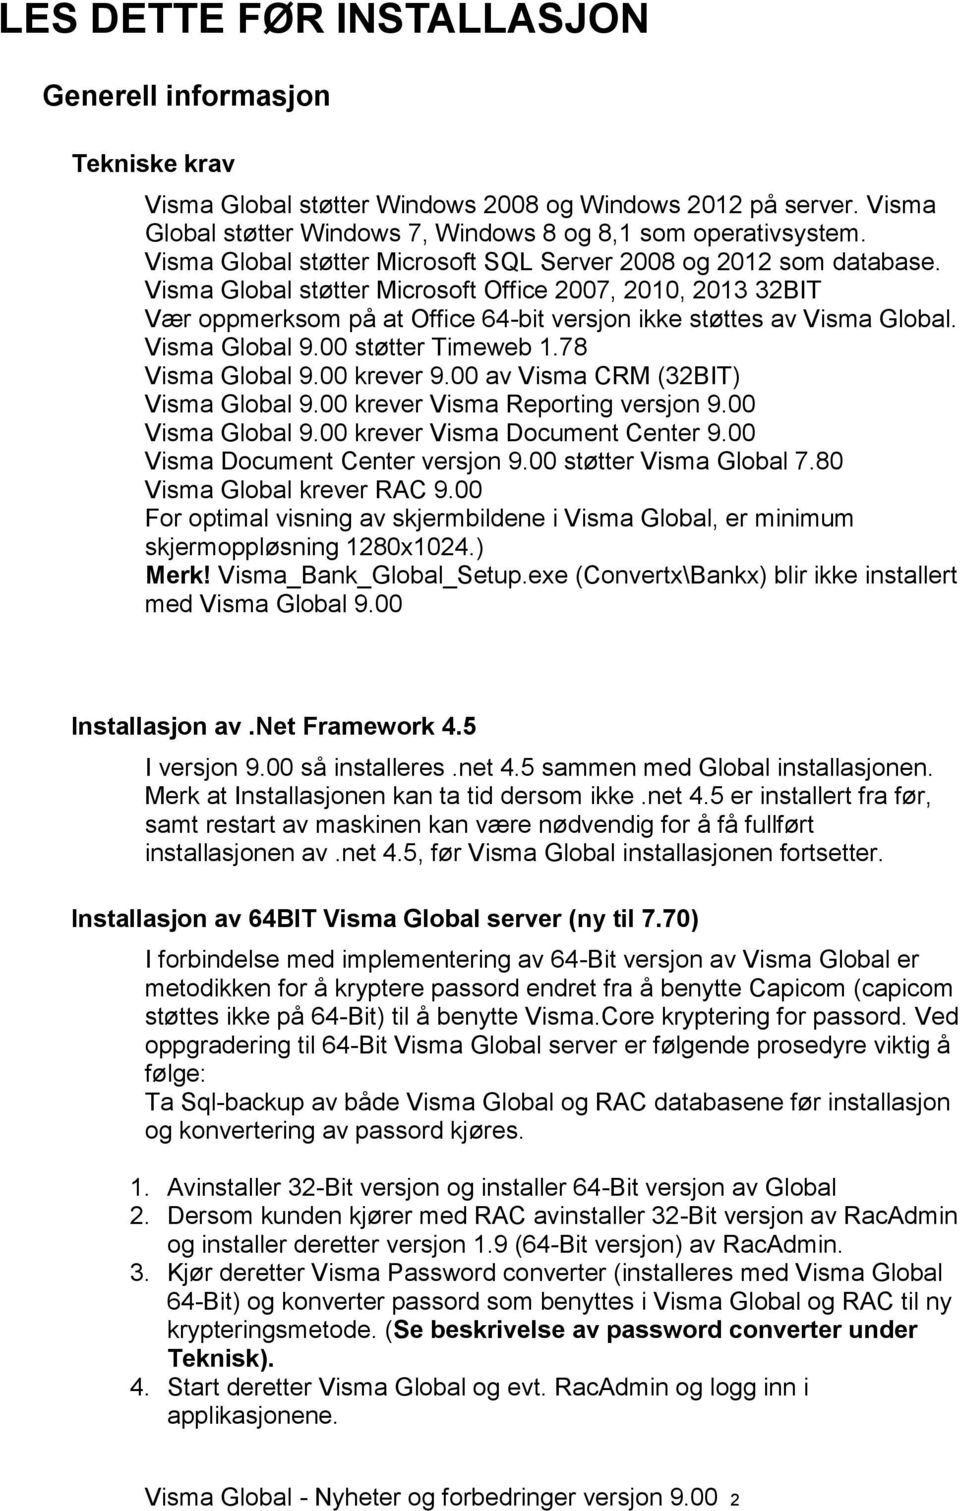 Visma Global støtter Microsoft Office 2007, 2010, 2013 32BIT Vær oppmerksom på at Office 64-bit versjon ikke støttes av Visma Global. Visma Global 9.00 støtter Timeweb 1.78 Visma Global 9.00 krever 9.